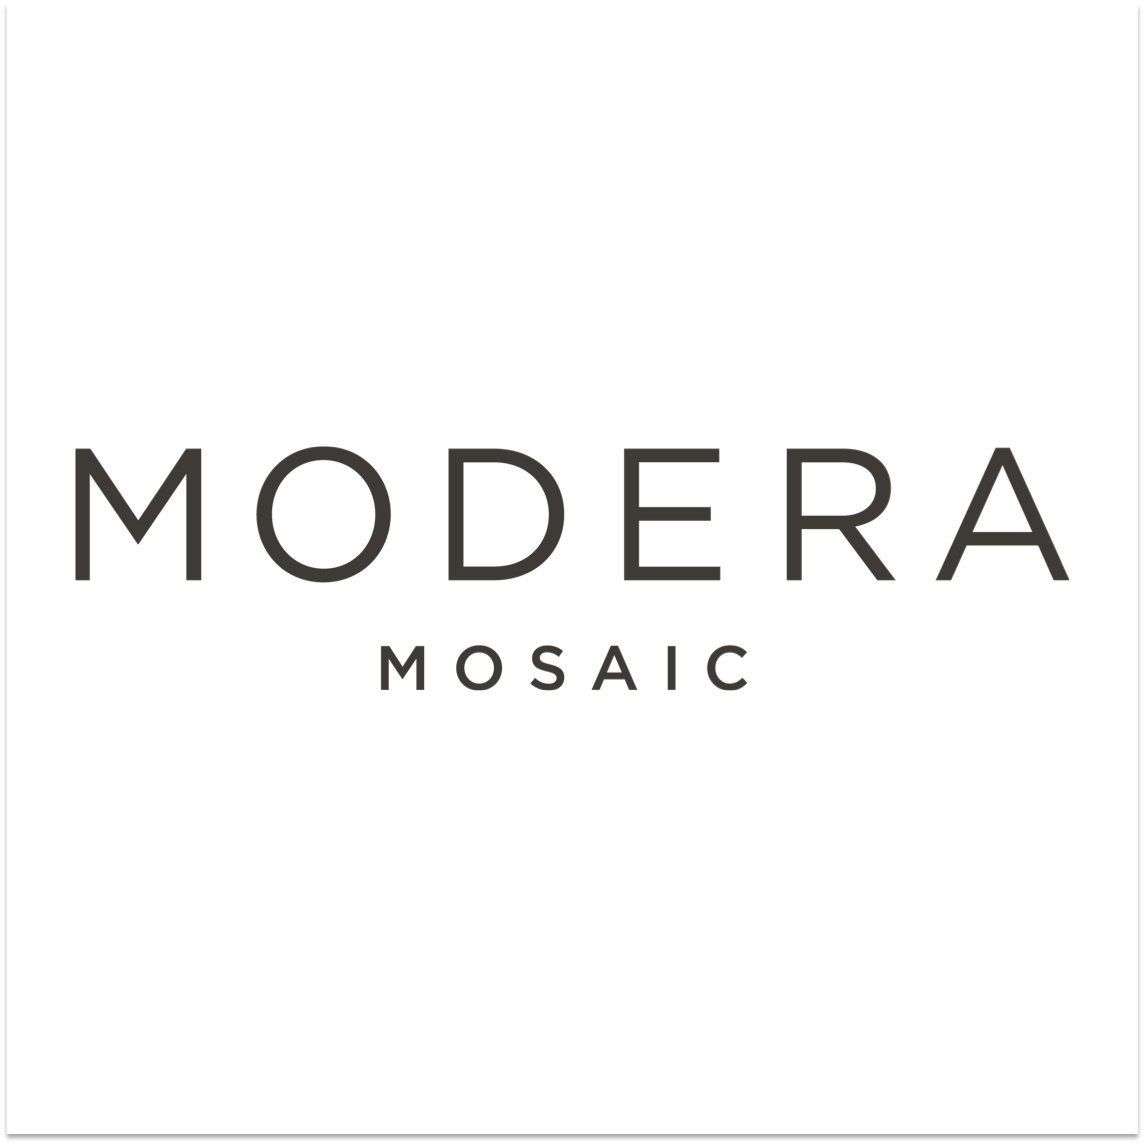 Modera Mosaic